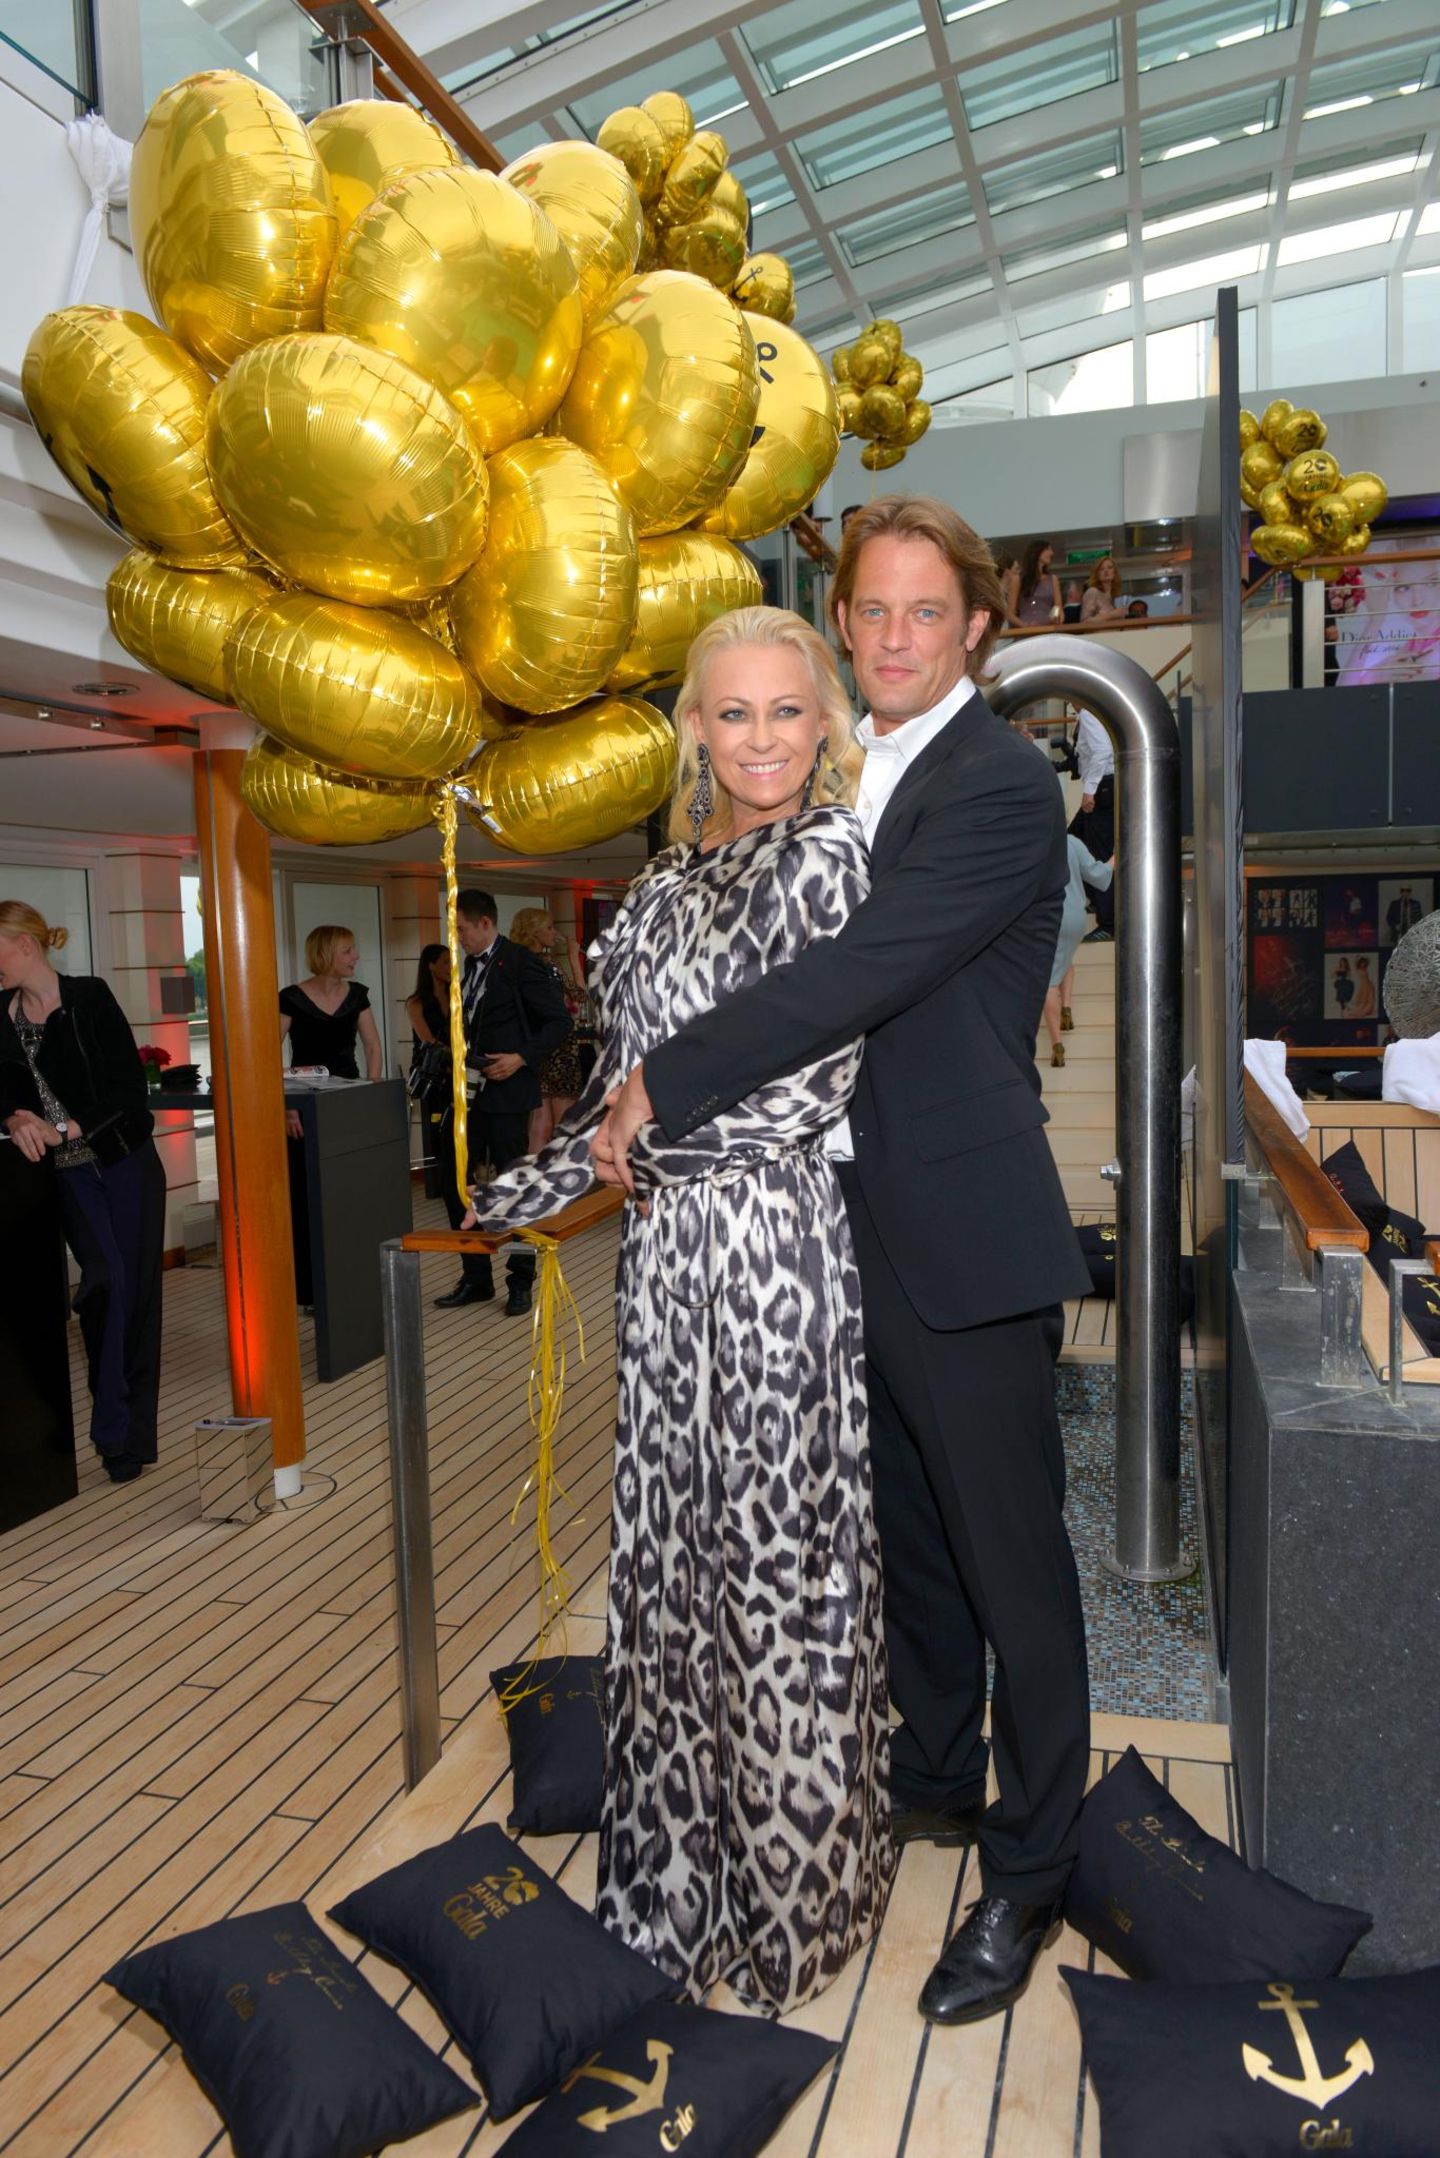 Juni 2014  Jenny Elvers und Steffen von der Beeck bei der 20 Jahre Gala Jubiläumsfeier auf der MS Europa 2.